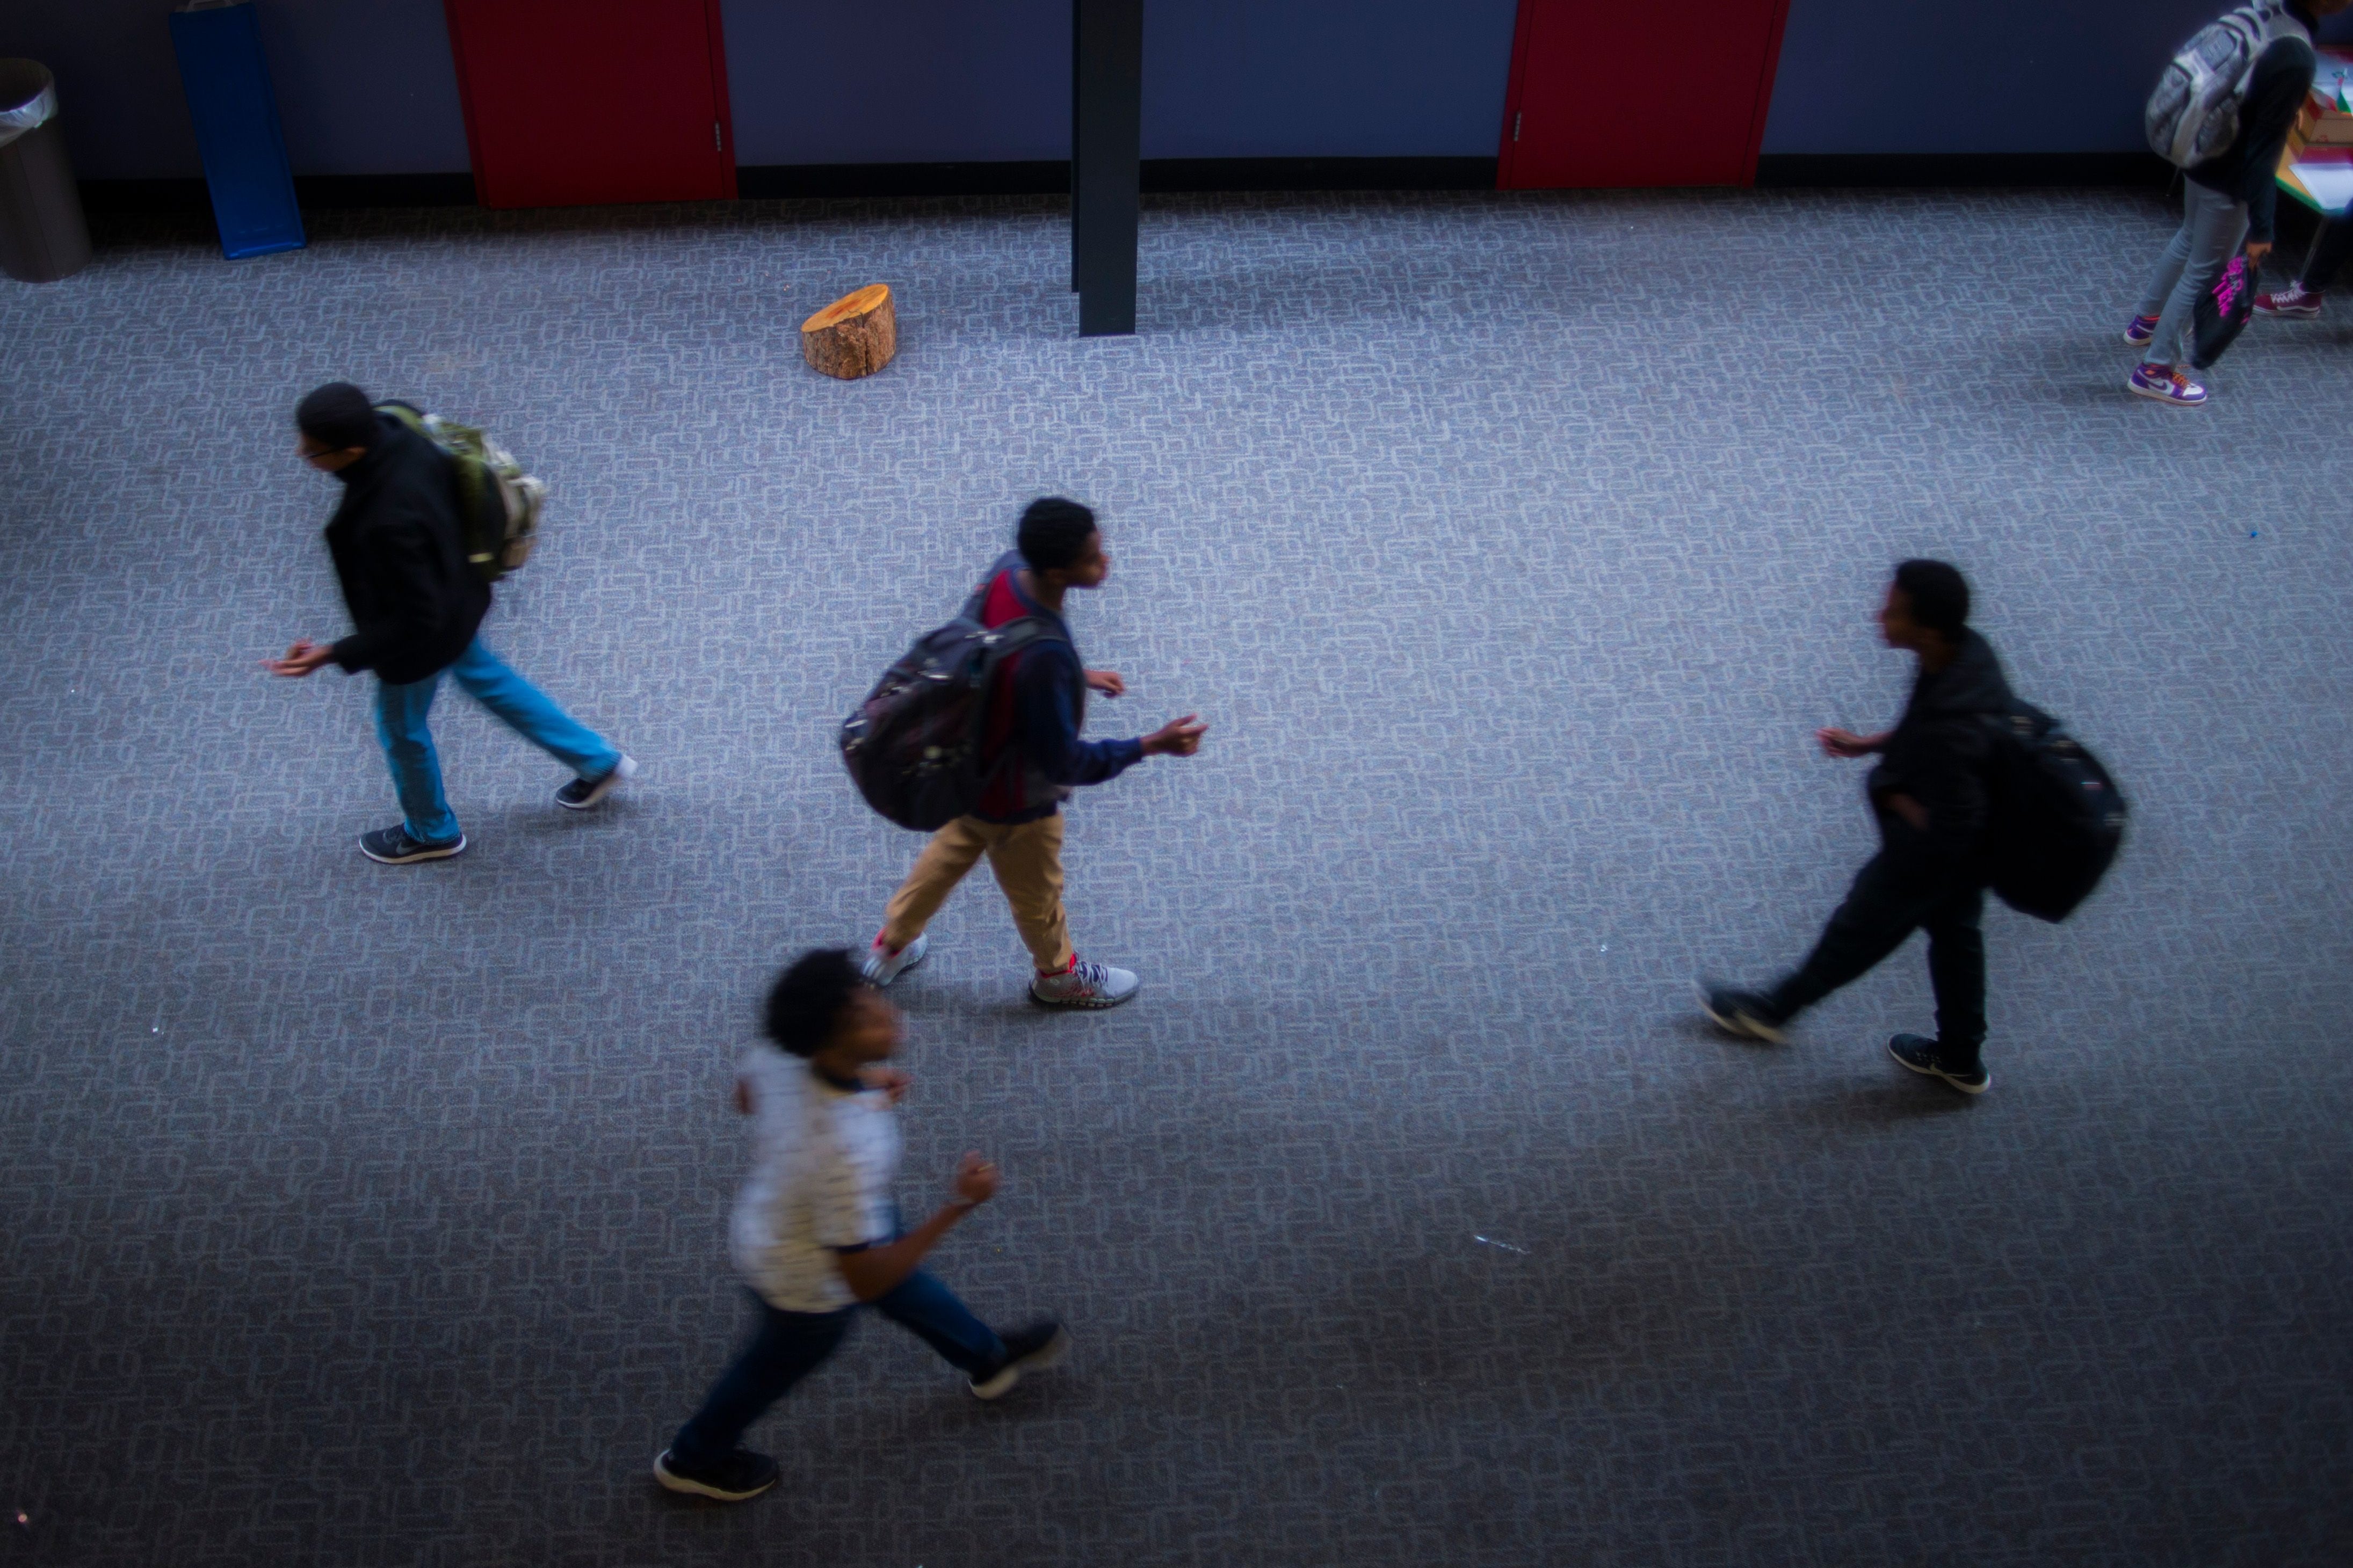 Students walk apart in a high school hallway.